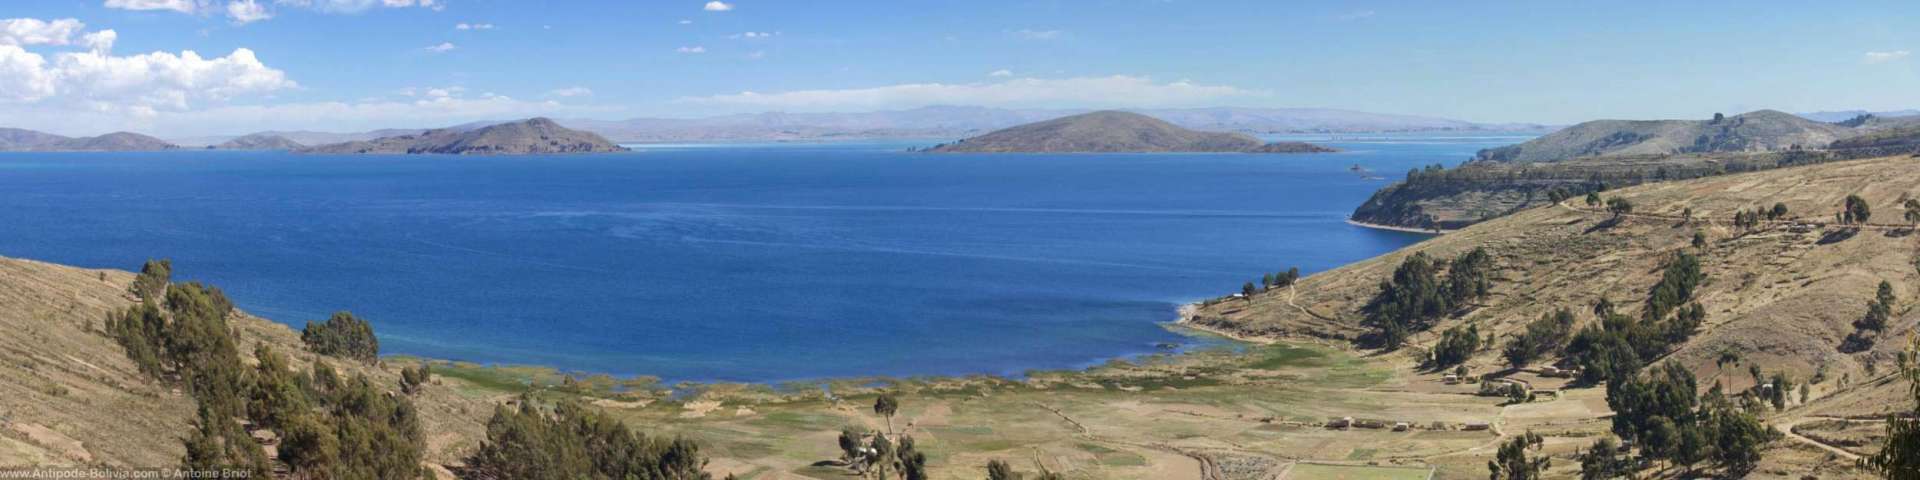 Croisière sur le lac Titicaca